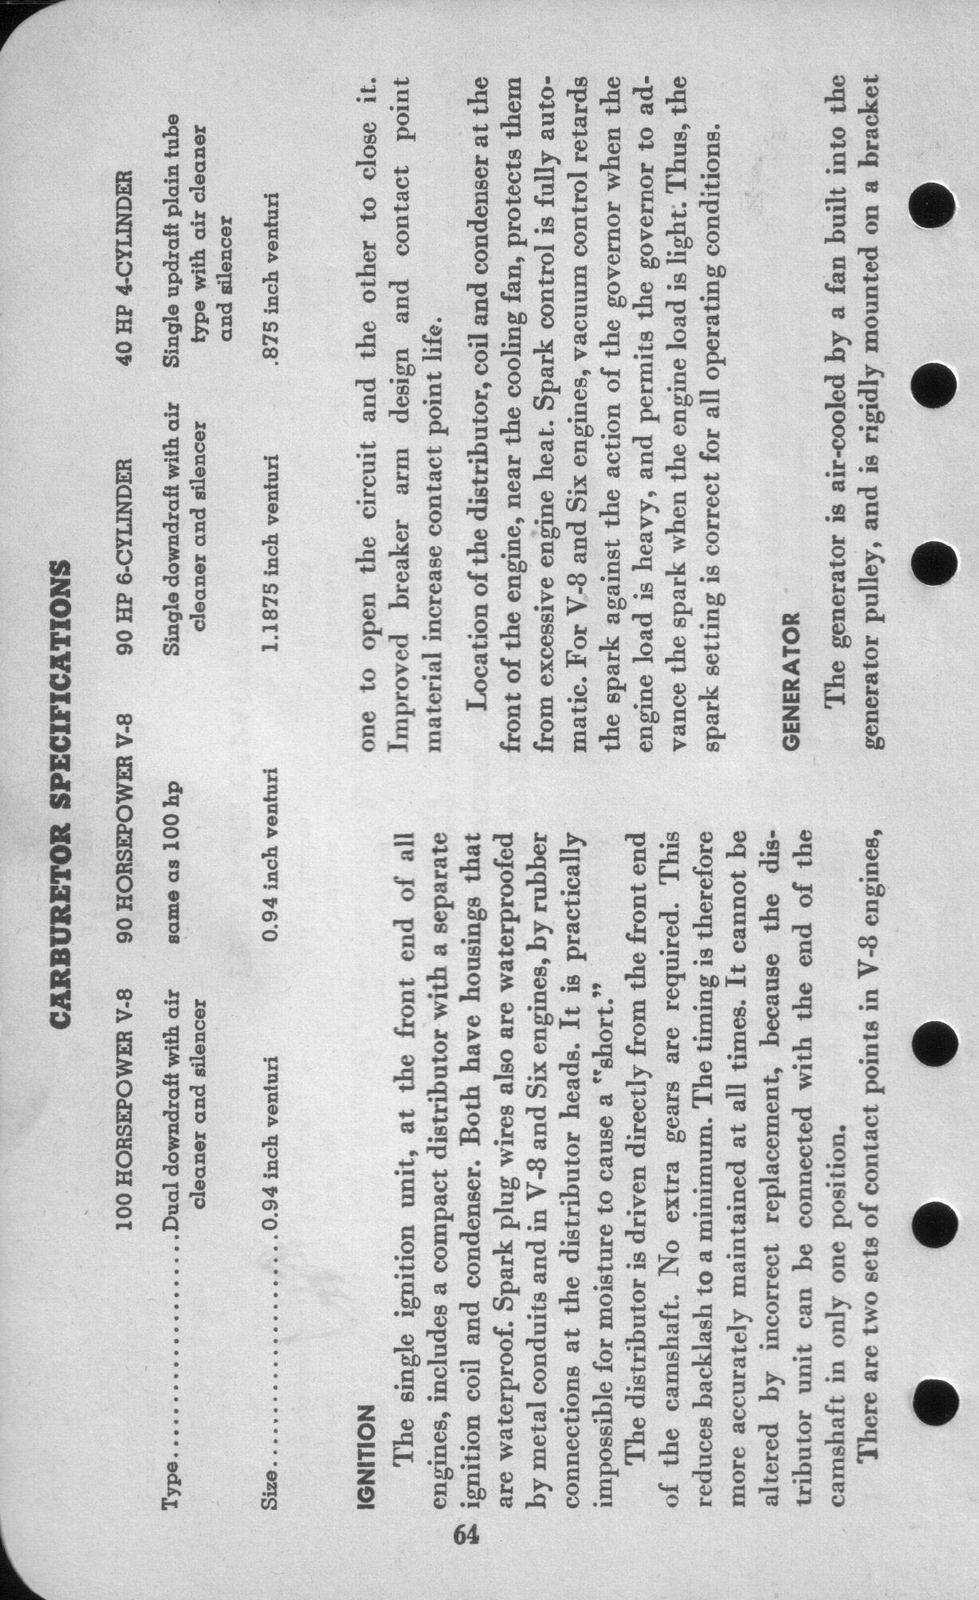 n_1942 Ford Salesmans Reference Manual-064.jpg